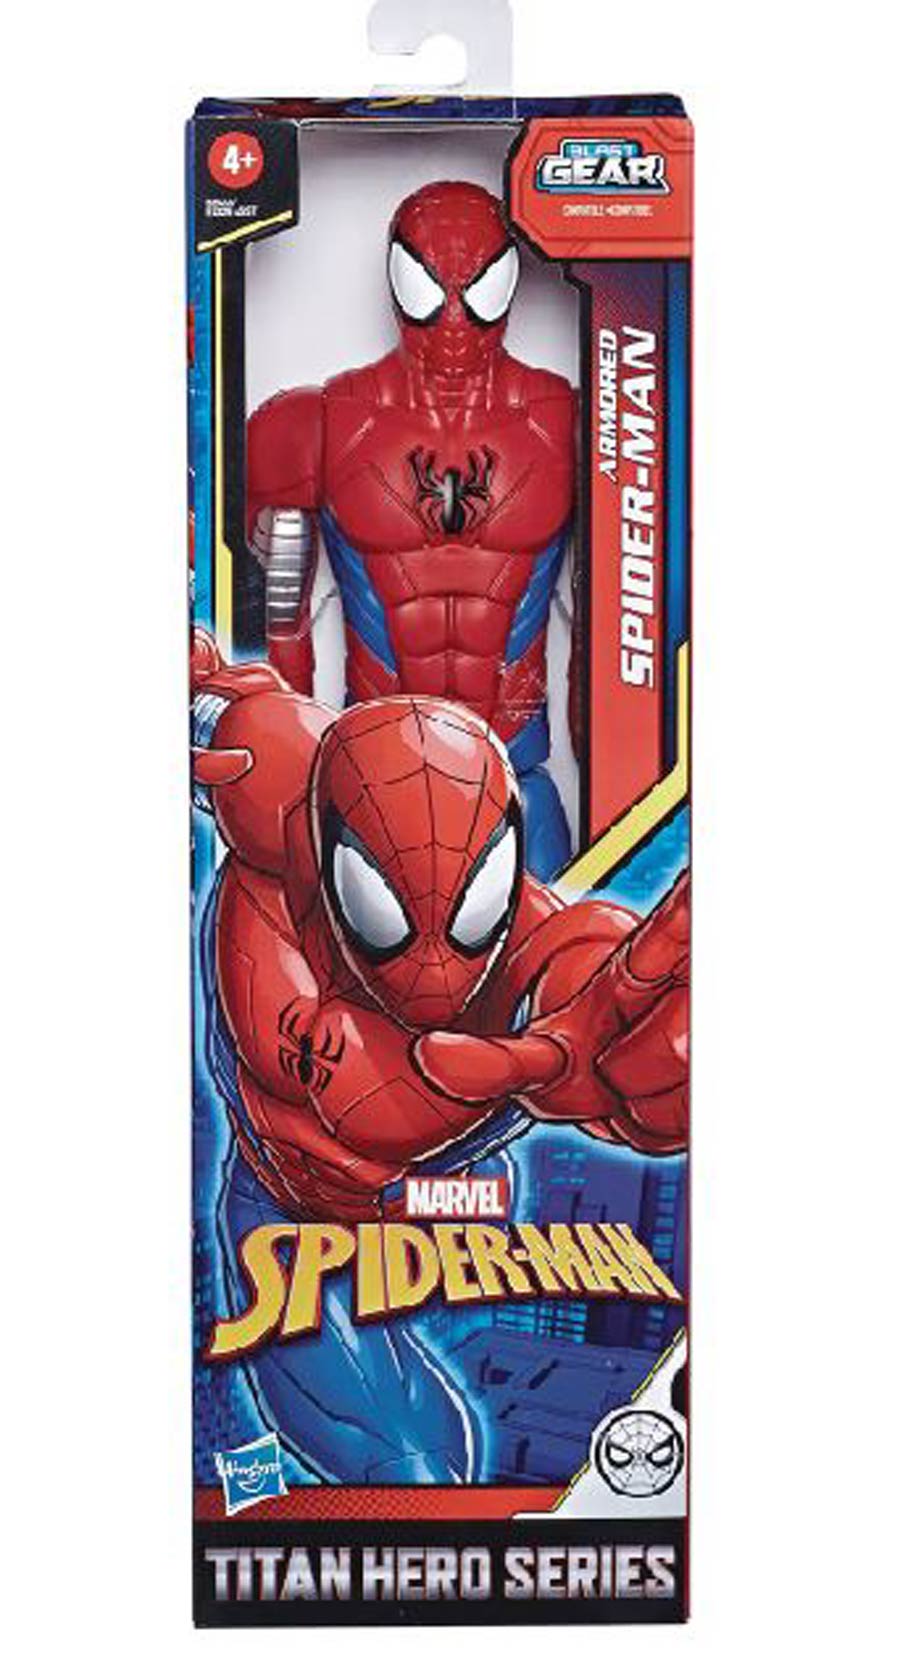 Spider-Man Titan Hero Web Warriors 12-Inch Action Figure 202001 - Armored Spider-Man